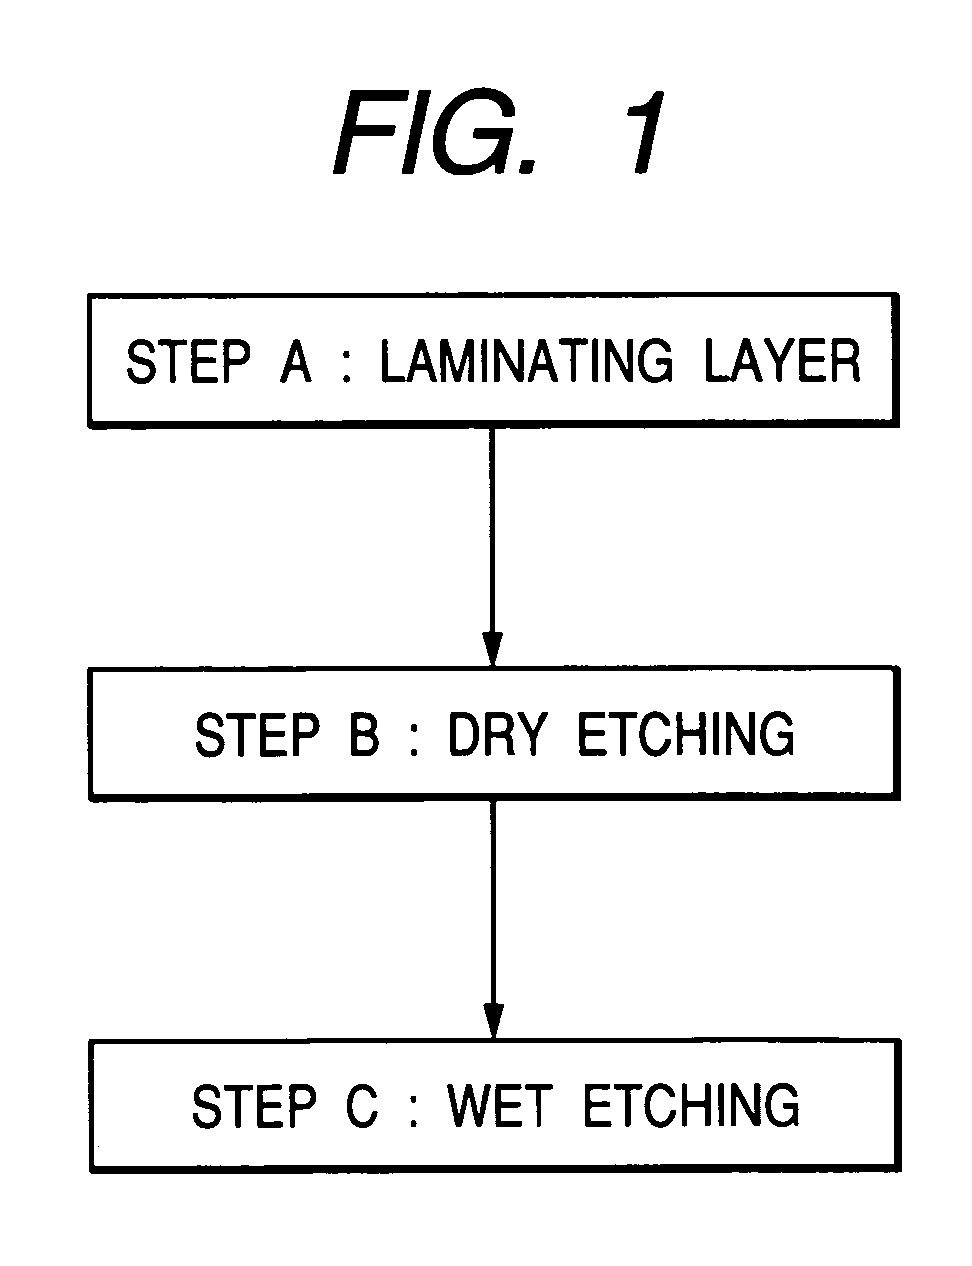 Method of manufacturing electron-emitting device, method of manufacturing electron source, and method of manufacturing image display device